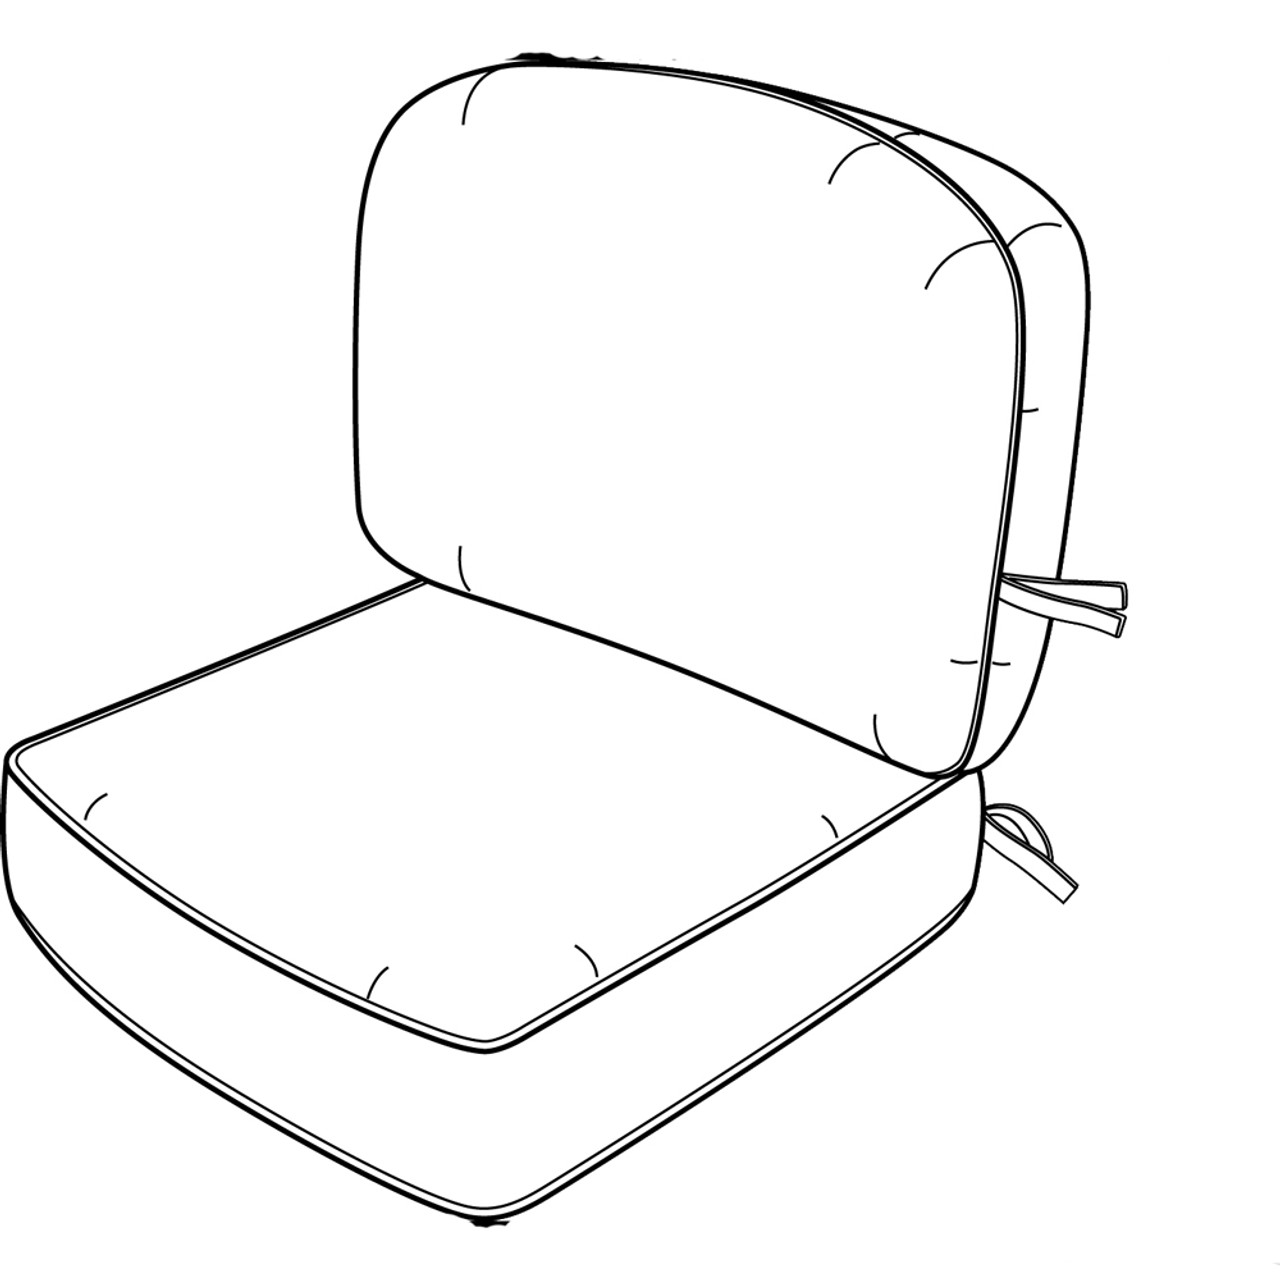 Ergonomic Seat Cushion – Haltana